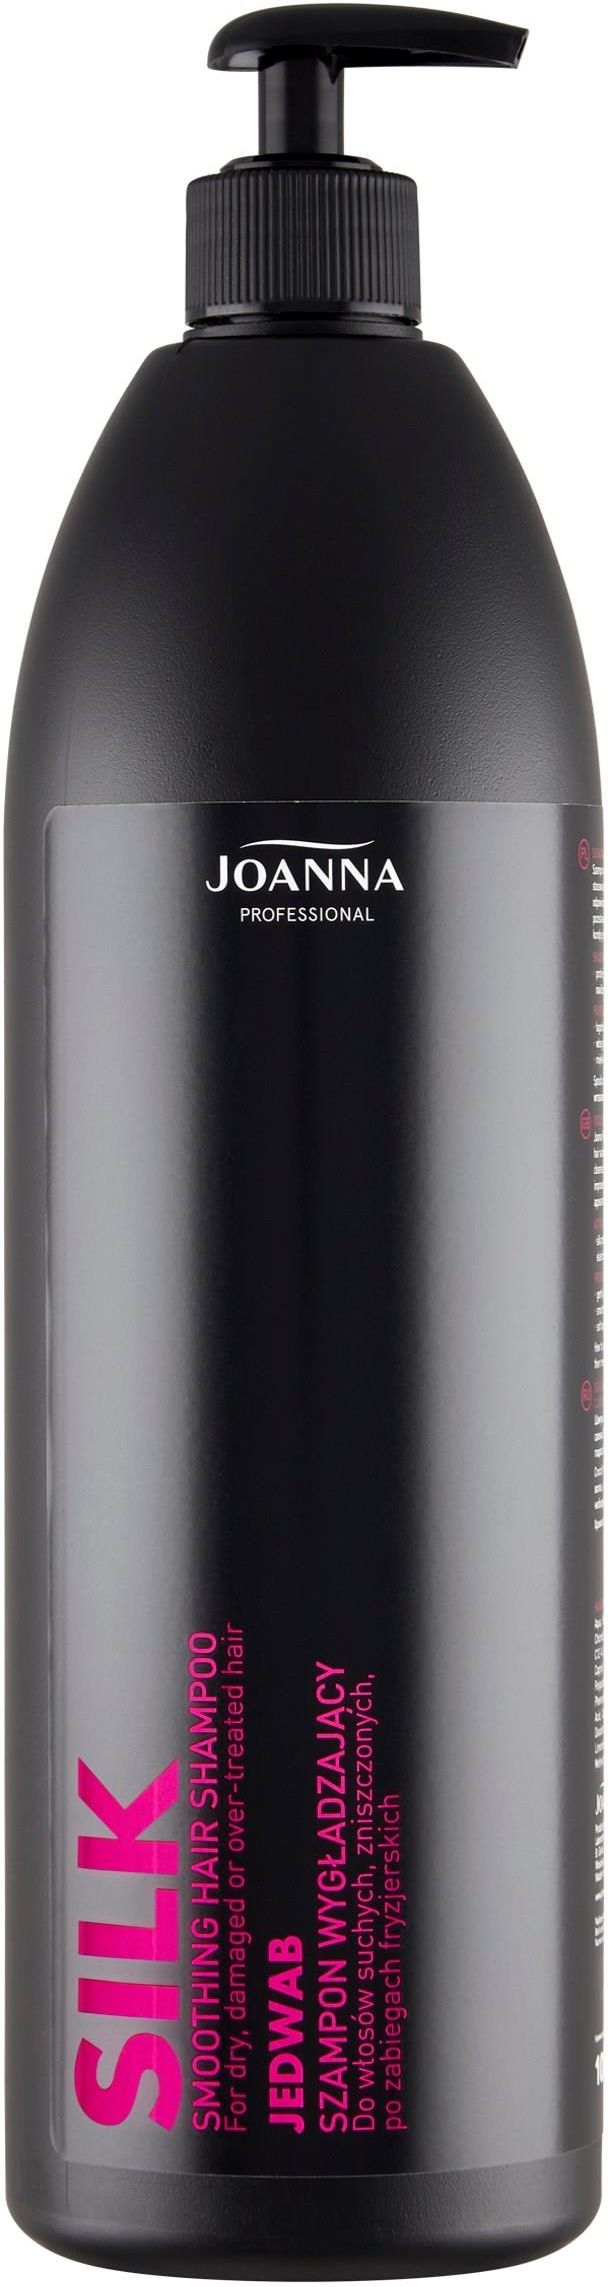 joanna professional szampon wygładzający z jedwabiem